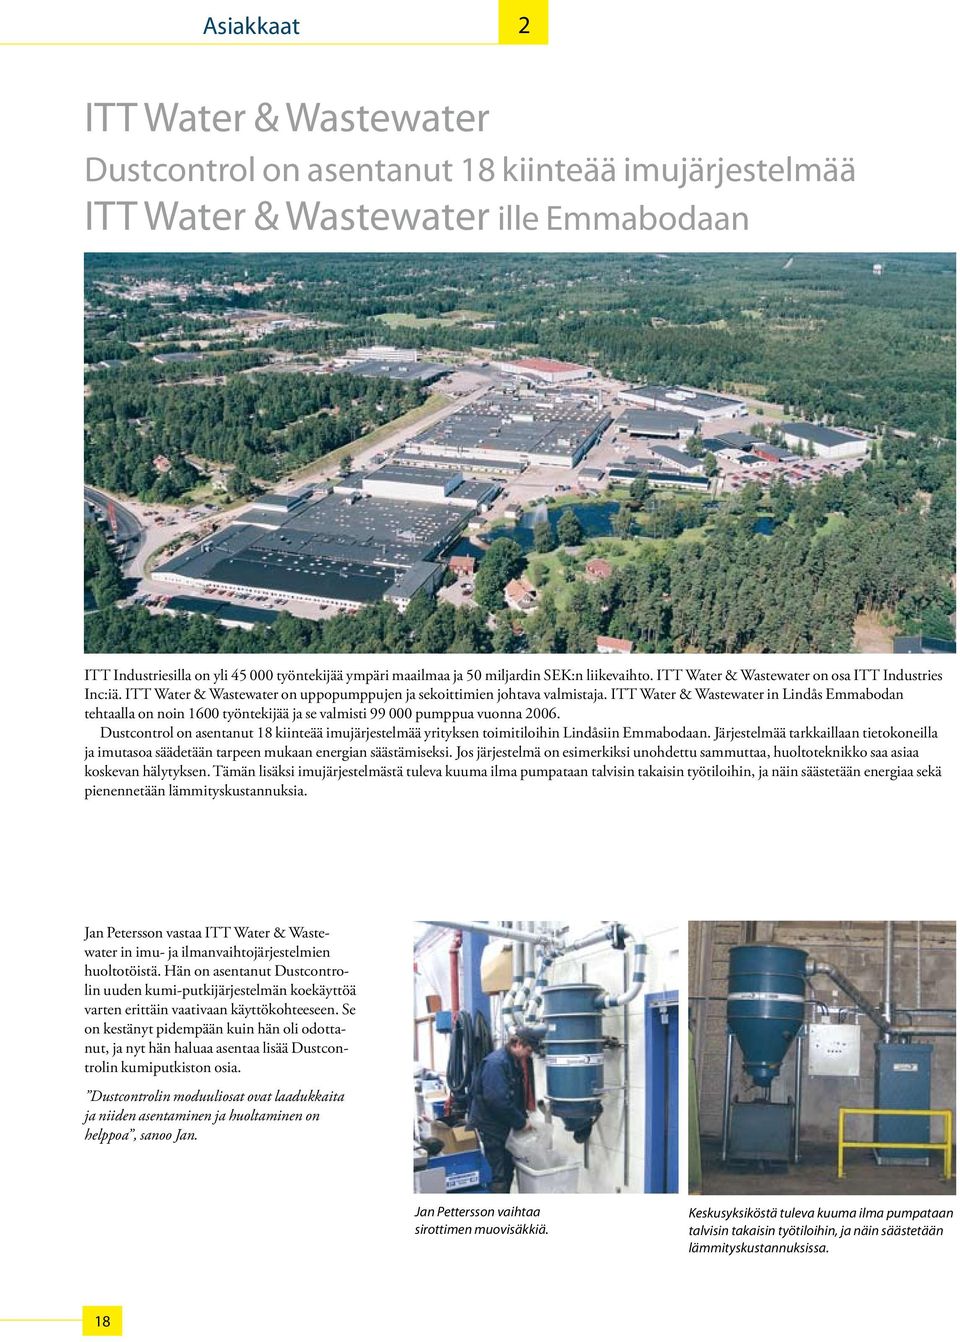 ITT Water & Wastewater in Lindås Emmabodan tehtaalla on noin 1600 työntekijää ja se valmisti 99 000 pumppua vuonna 2006.